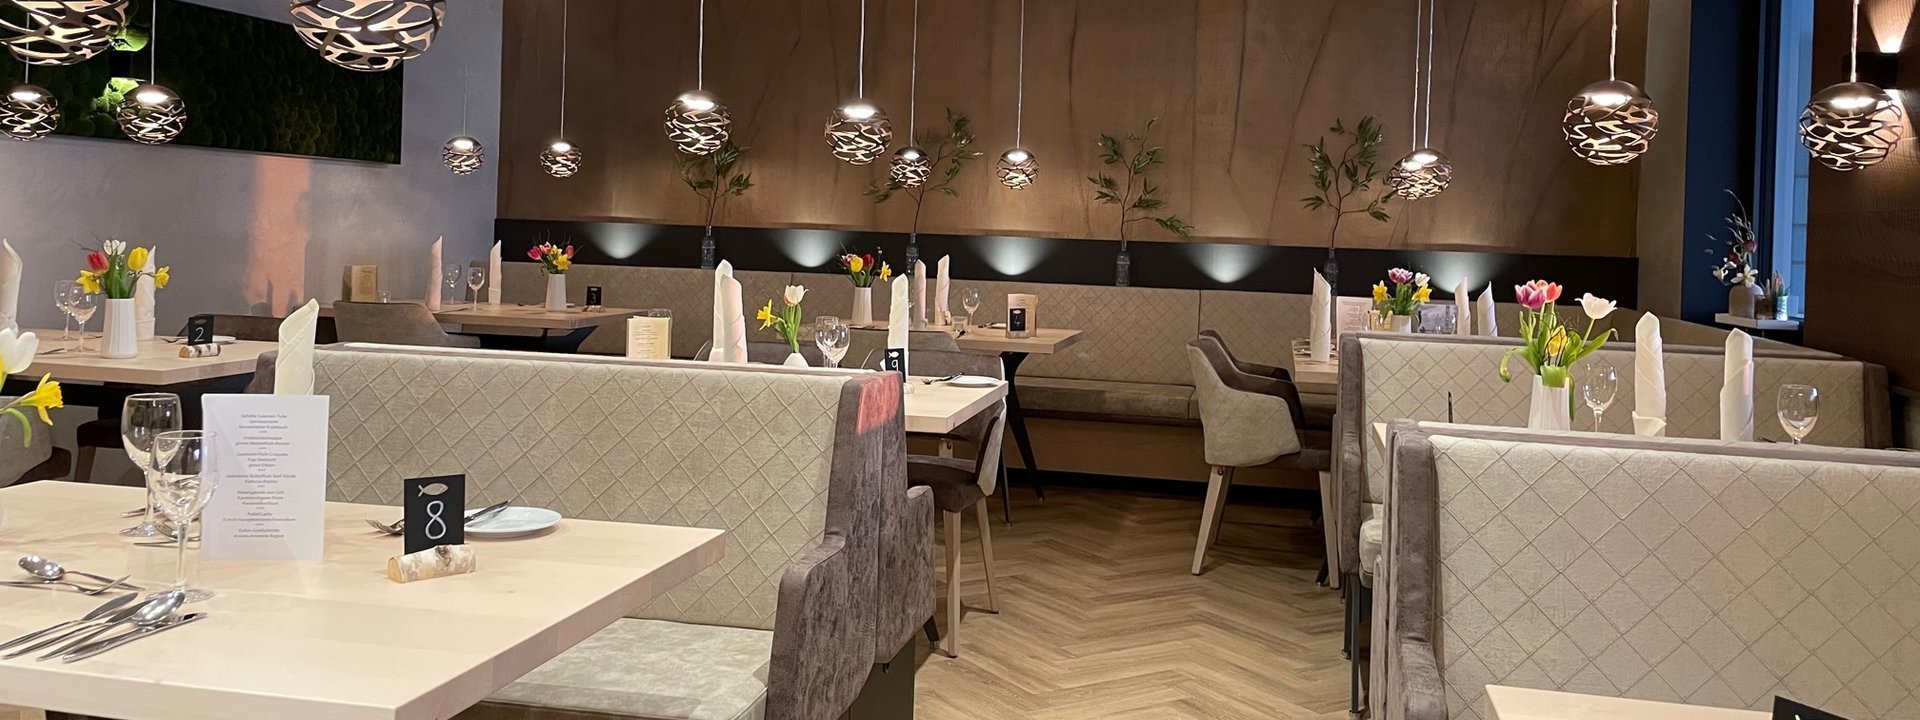 Speisesaal des Restaurants. Der Raum besteht mehreren Tischen und Stühlen in den Farben braun und beige. Silberne Lampen hängen von der Decke.